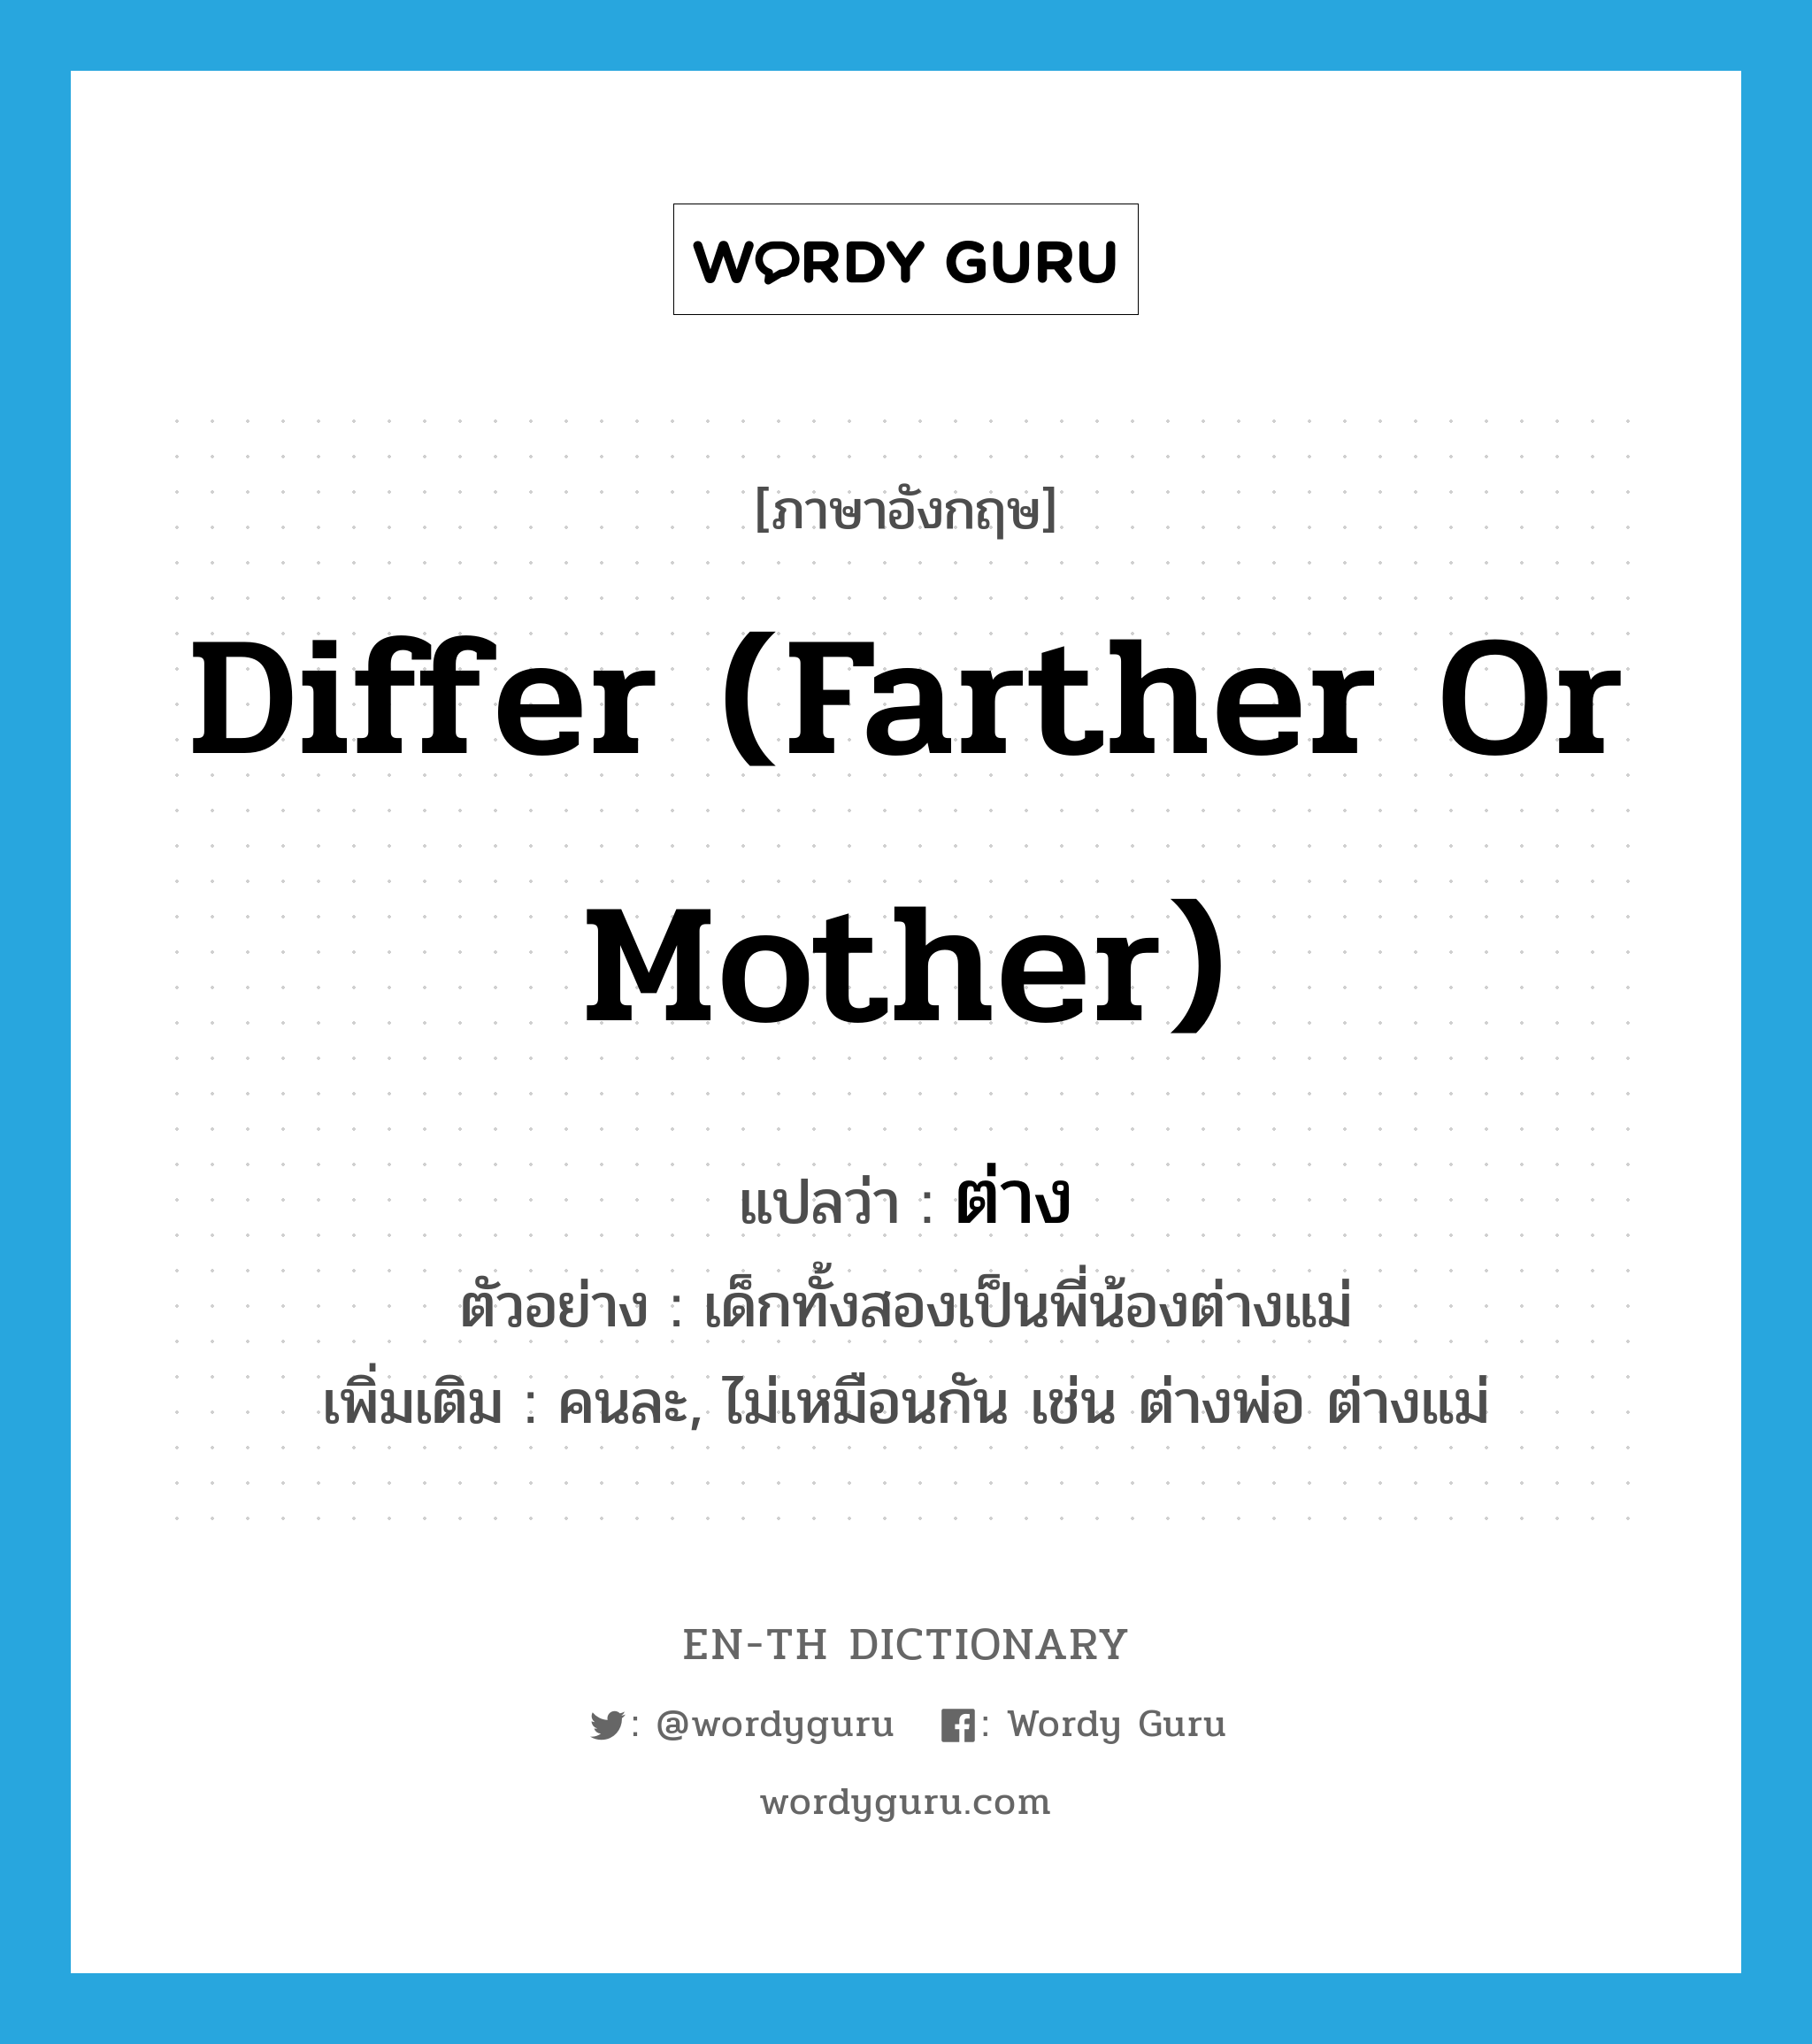 ต่าง ภาษาอังกฤษ?, คำศัพท์ภาษาอังกฤษ ต่าง แปลว่า differ (farther or mother) ประเภท ADV ตัวอย่าง เด็กทั้งสองเป็นพี่น้องต่างแม่ เพิ่มเติม คนละ, ไม่เหมือนกัน เช่น ต่างพ่อ ต่างแม่ หมวด ADV